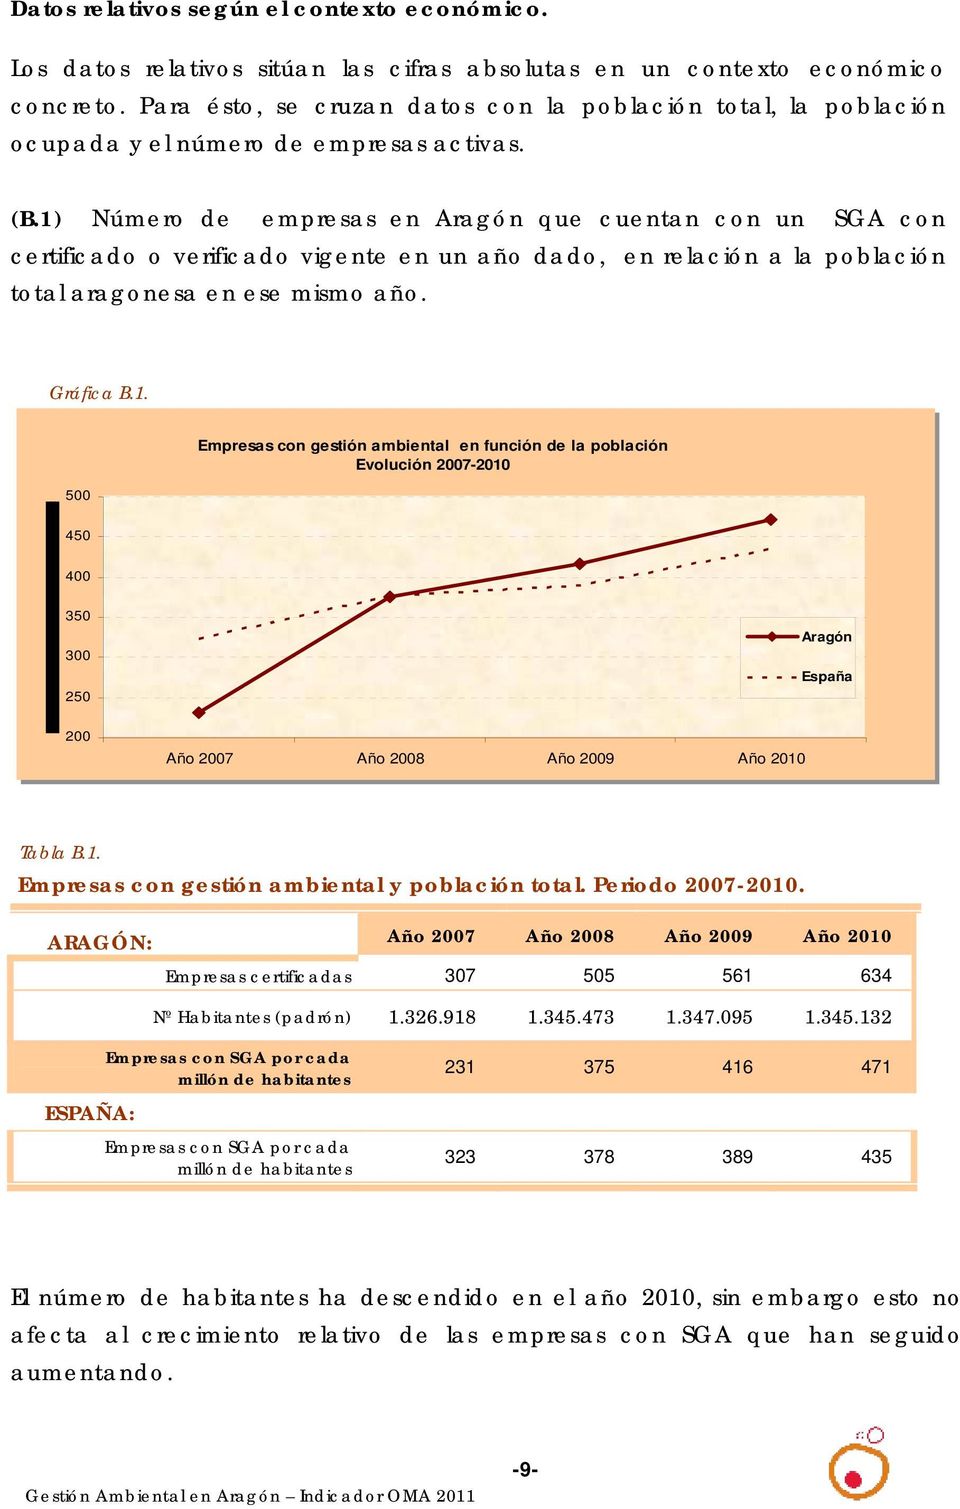 1) Número de empresas en Aragón que cuentan con un SGA con certificado o verificado vigente en un año dado, en relación a la población total aragonesa en ese mismo año. Gráfica B.1. 500 500 Empresas